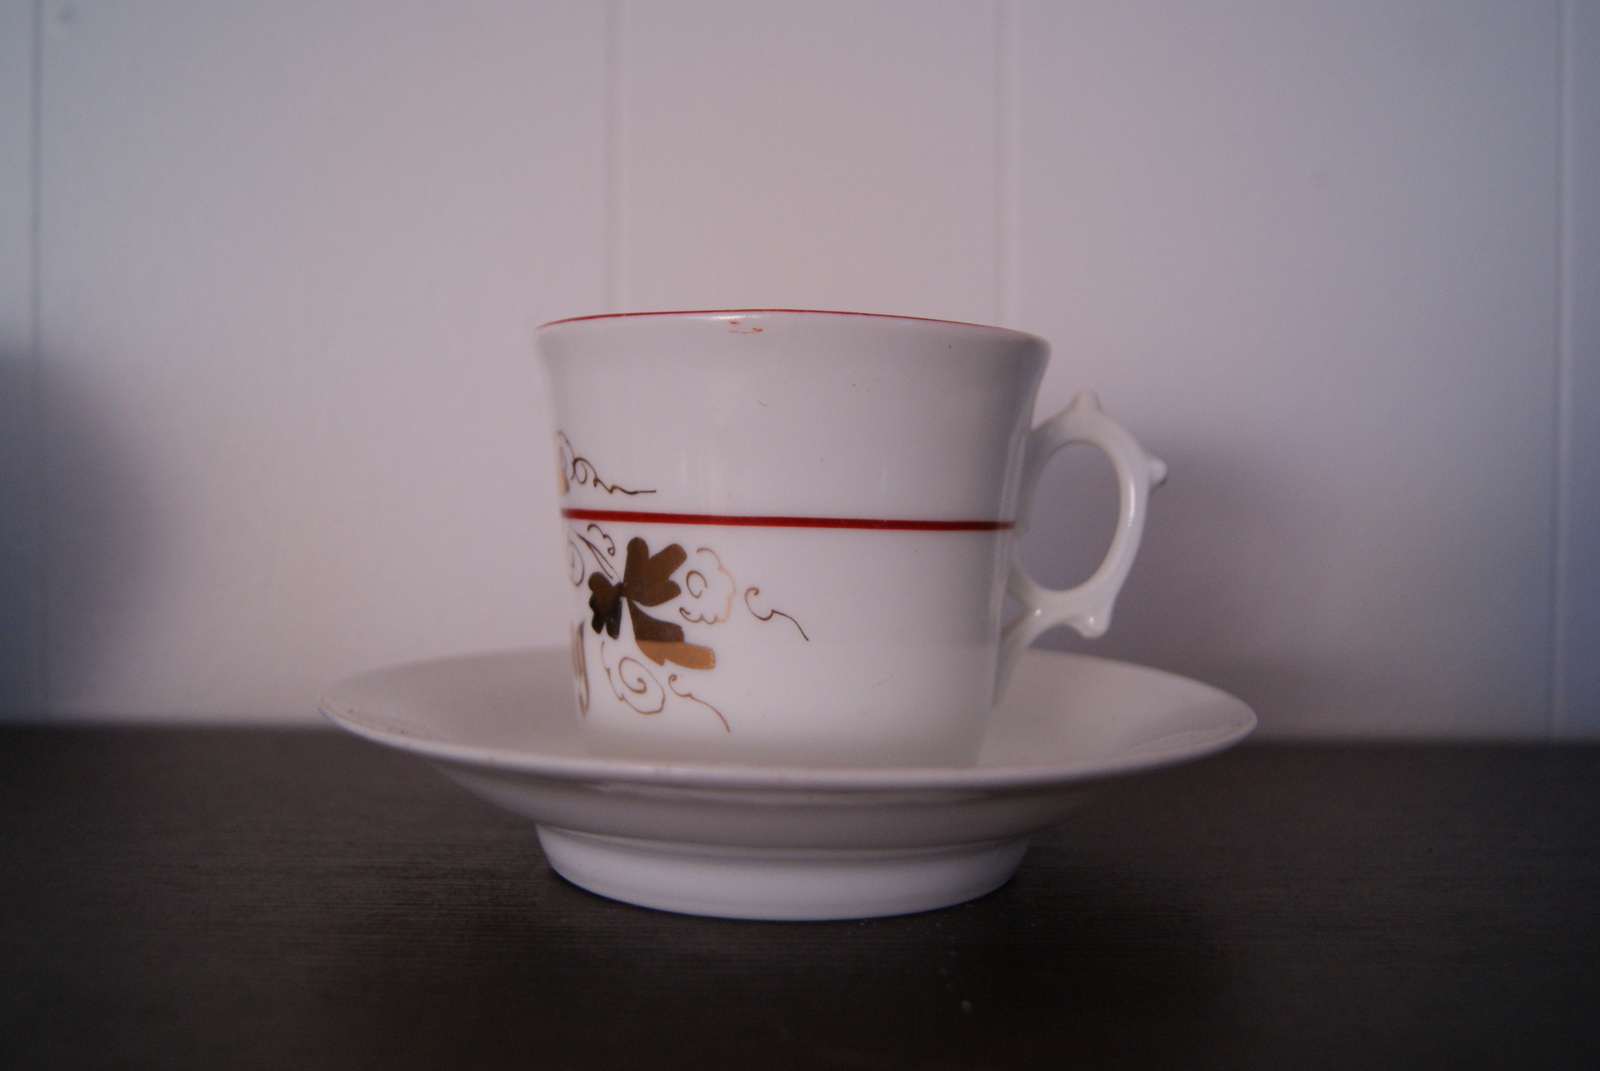 Porsgrund kopp med skål, gull dekor, rødt bånd og inskripsjon: 